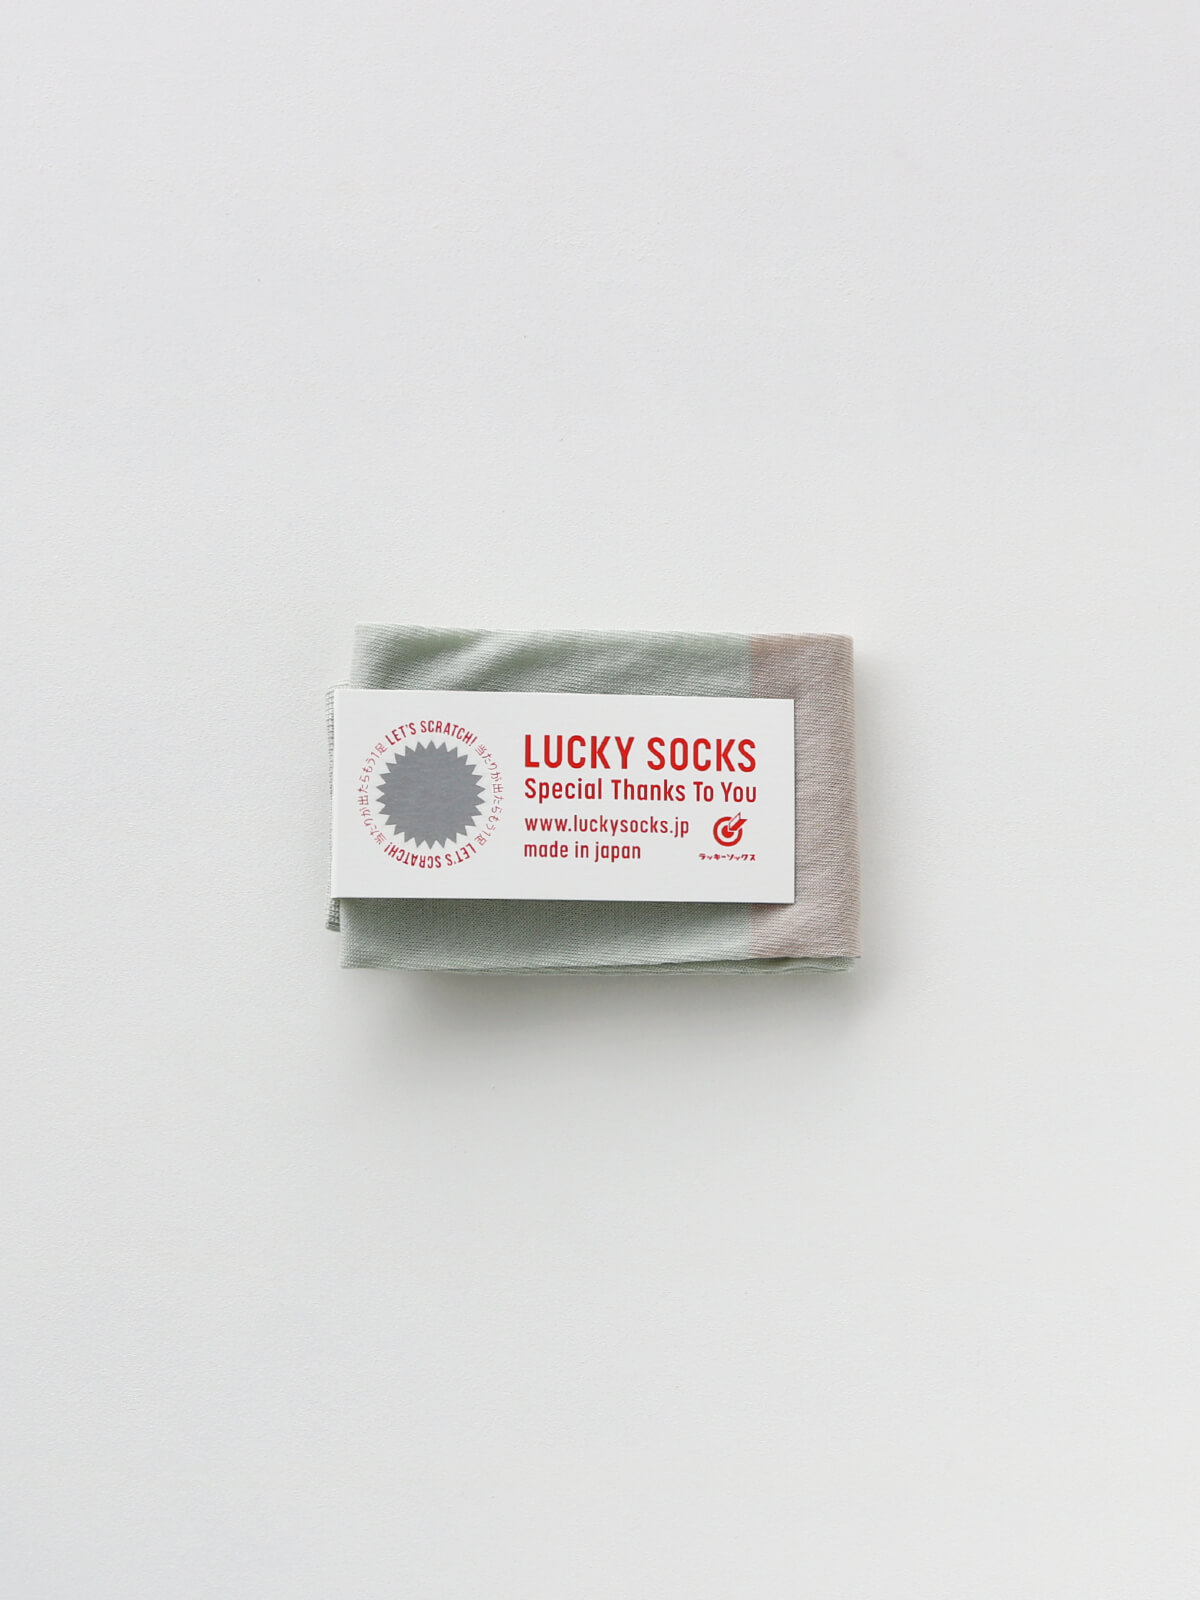 当たりつきギフト専用靴下のLUCKY SOCKS（ラッキーソックス）のSunscreen 2tone Armcover（サンスクリーン2トーンアームカバー）のペールミント×グレージュ_1